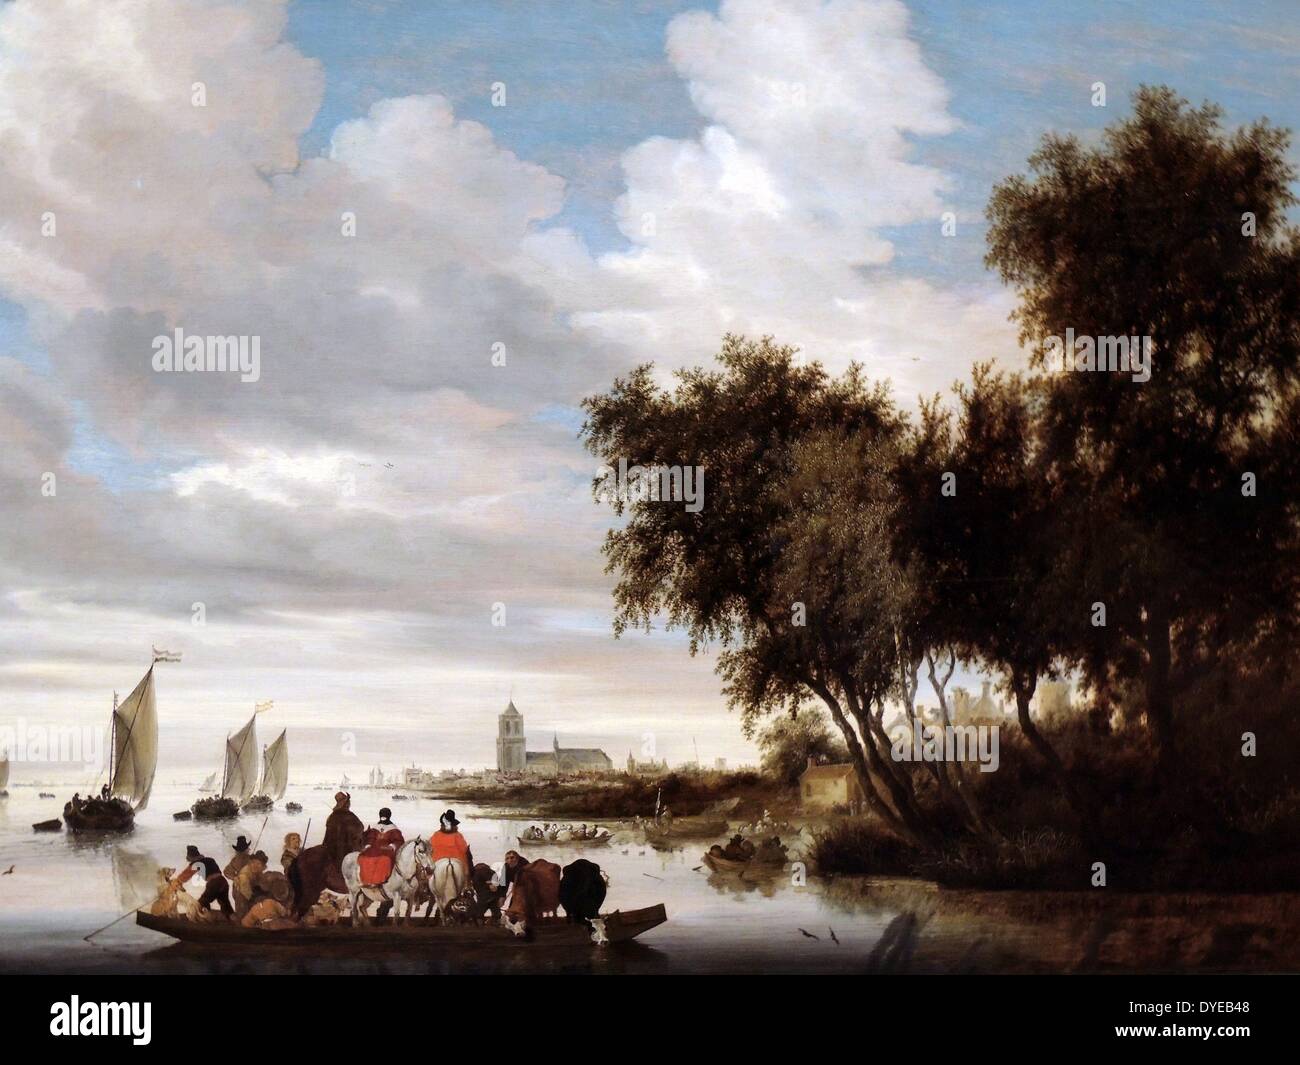 Flusslandschaft mit der Fähre von Salomon van Ruysdael (C. 1600-1670) Öl auf Leinwand, 1649 mit drei Pferden, vier Hunde, zwei Kühe und 12 Menschen an Bord, dieses schmale Fähre wird stark belastet zu sein. Die Boote in der Ferne sind auch mit Passagieren überfüllt. Salomon van Ruysdael war der Dolmetscher par excellence der flachen, wässrige Holländische Landschaft. Hier benutzte er eine bewährte und kompositorische Formel getestet; rechts eine Bank mit hohen Bäumen, und Links, einem Körper von Wasser bis zum Horizont. Stockfoto